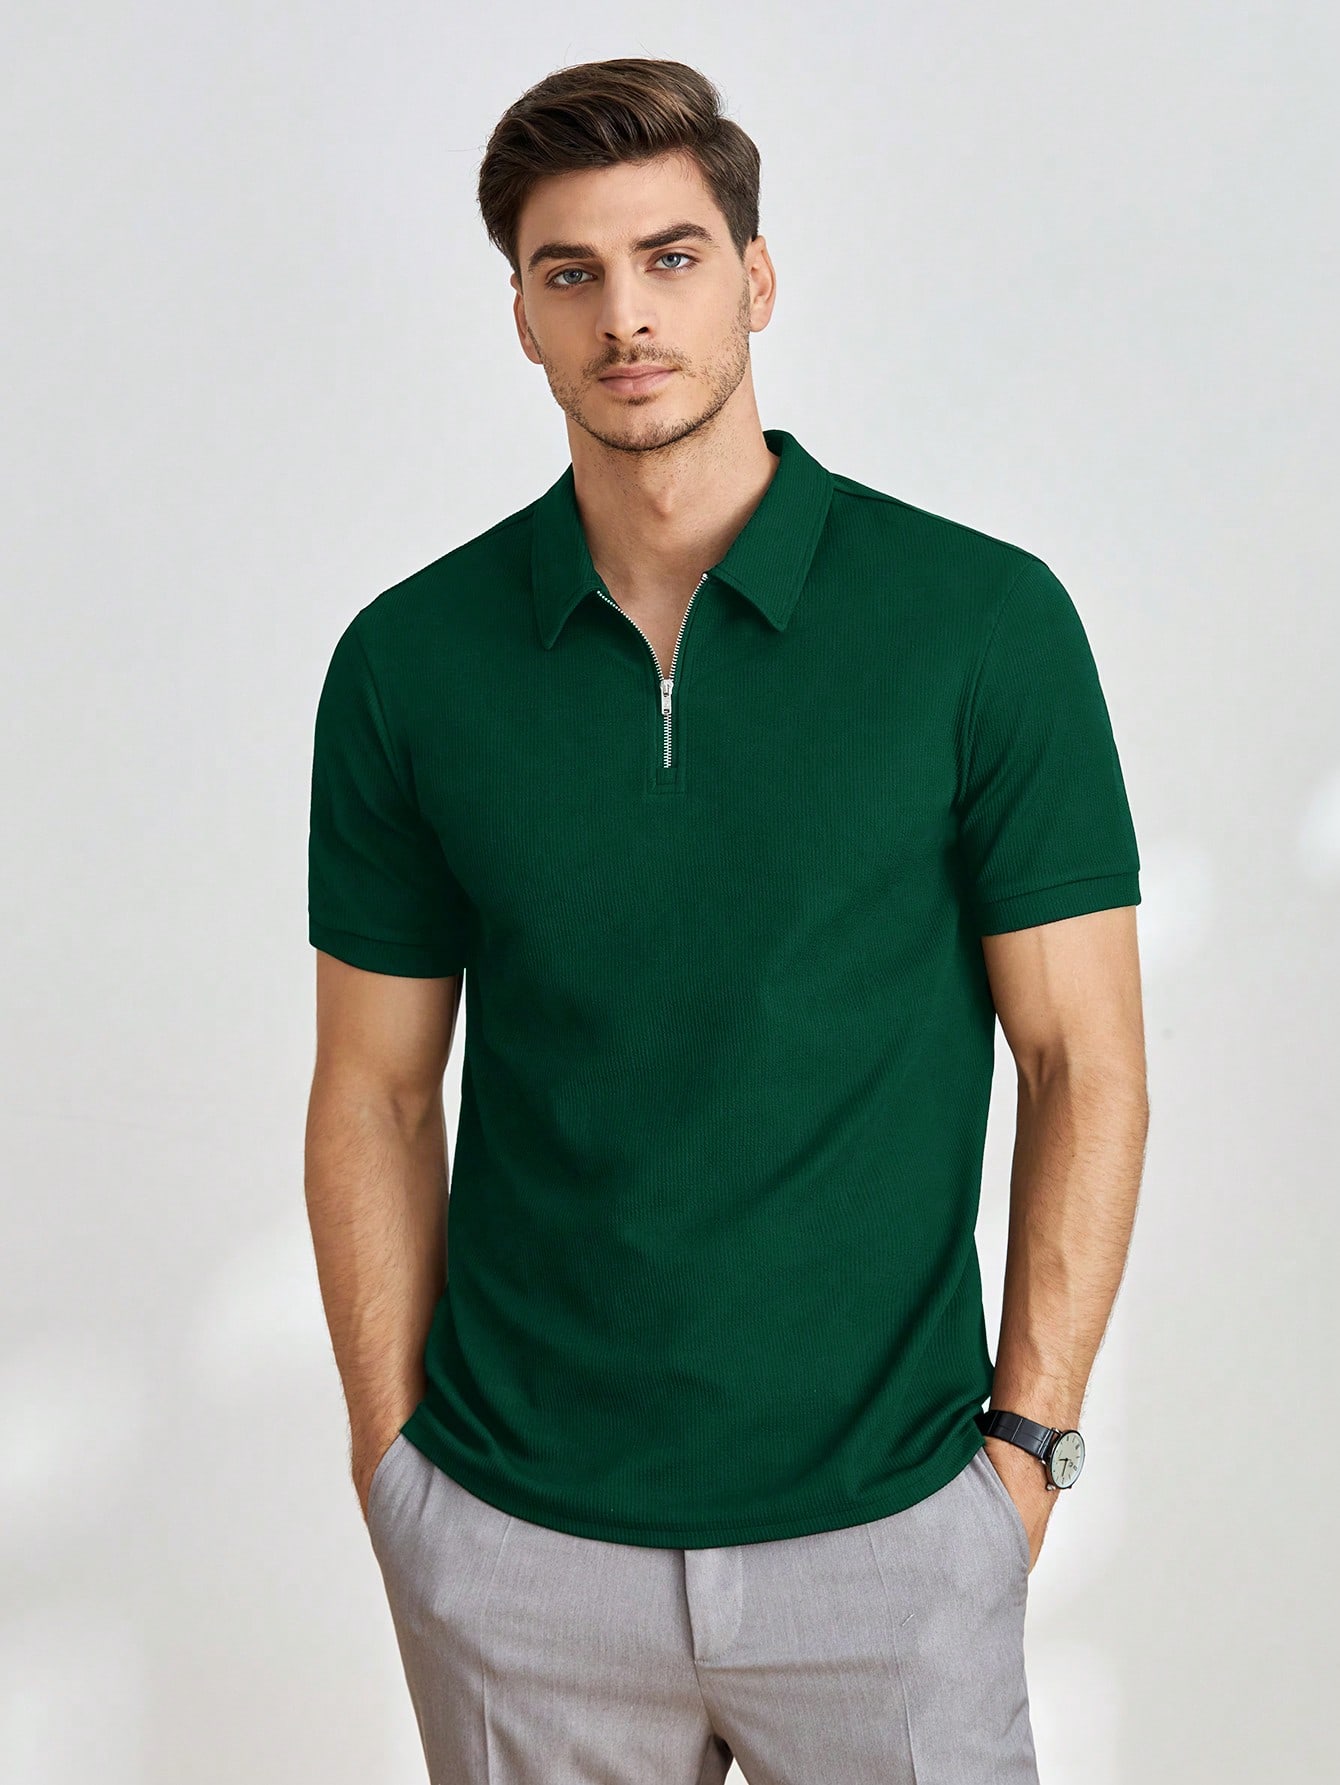 Мужская однотонная рубашка-поло с короткими рукавами Manfinity Homme, темно-зеленый